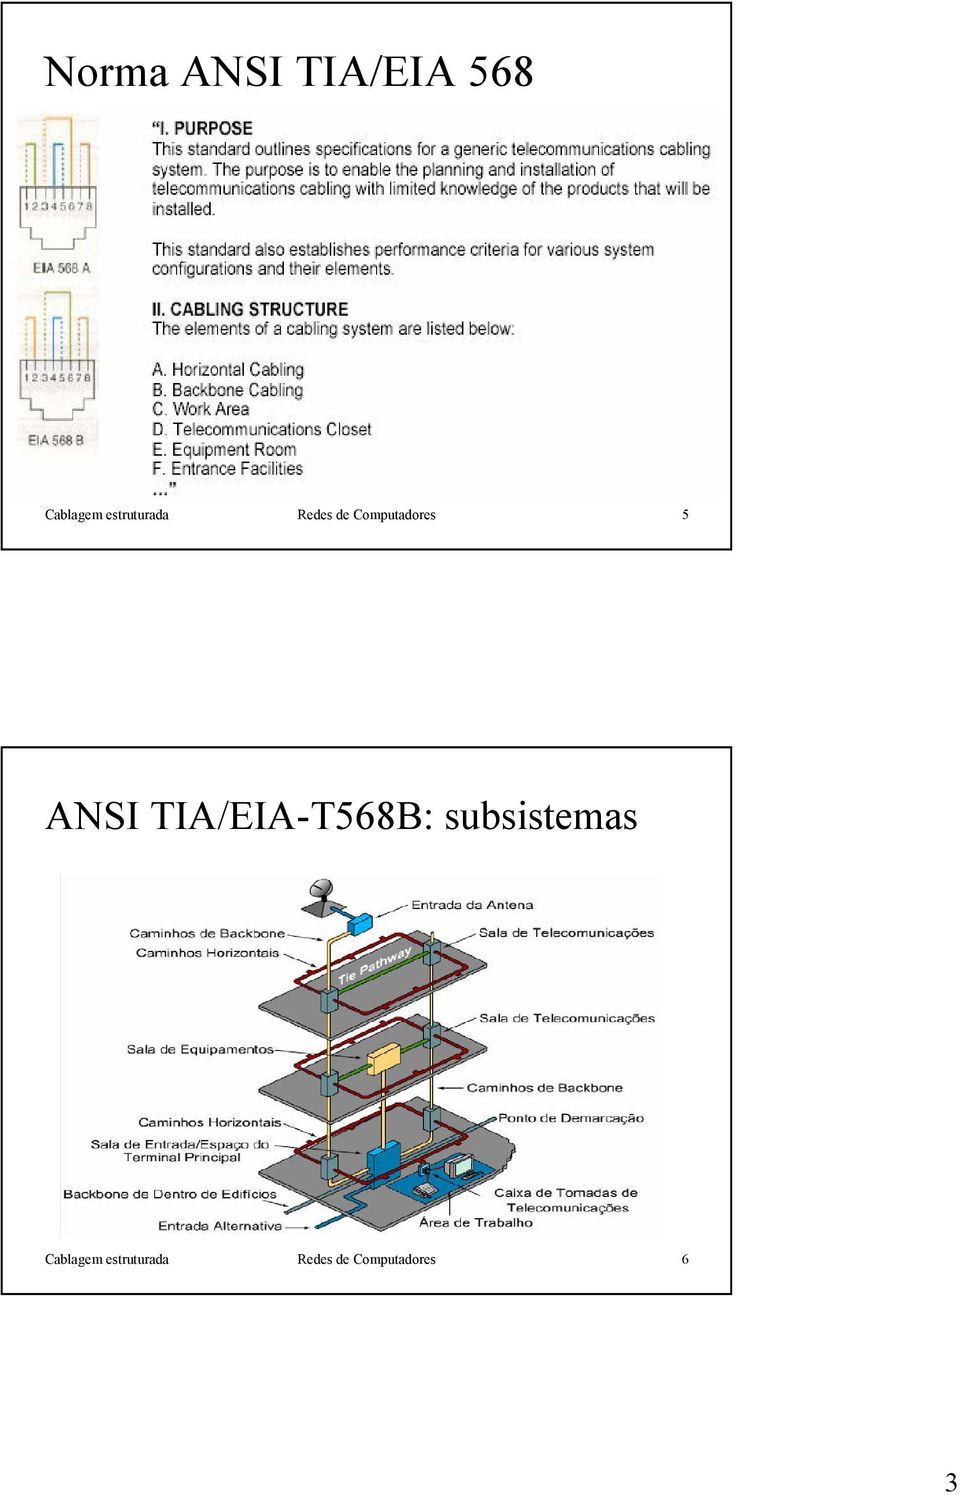 ANSI TIA/EIA-T568B: subsistemas